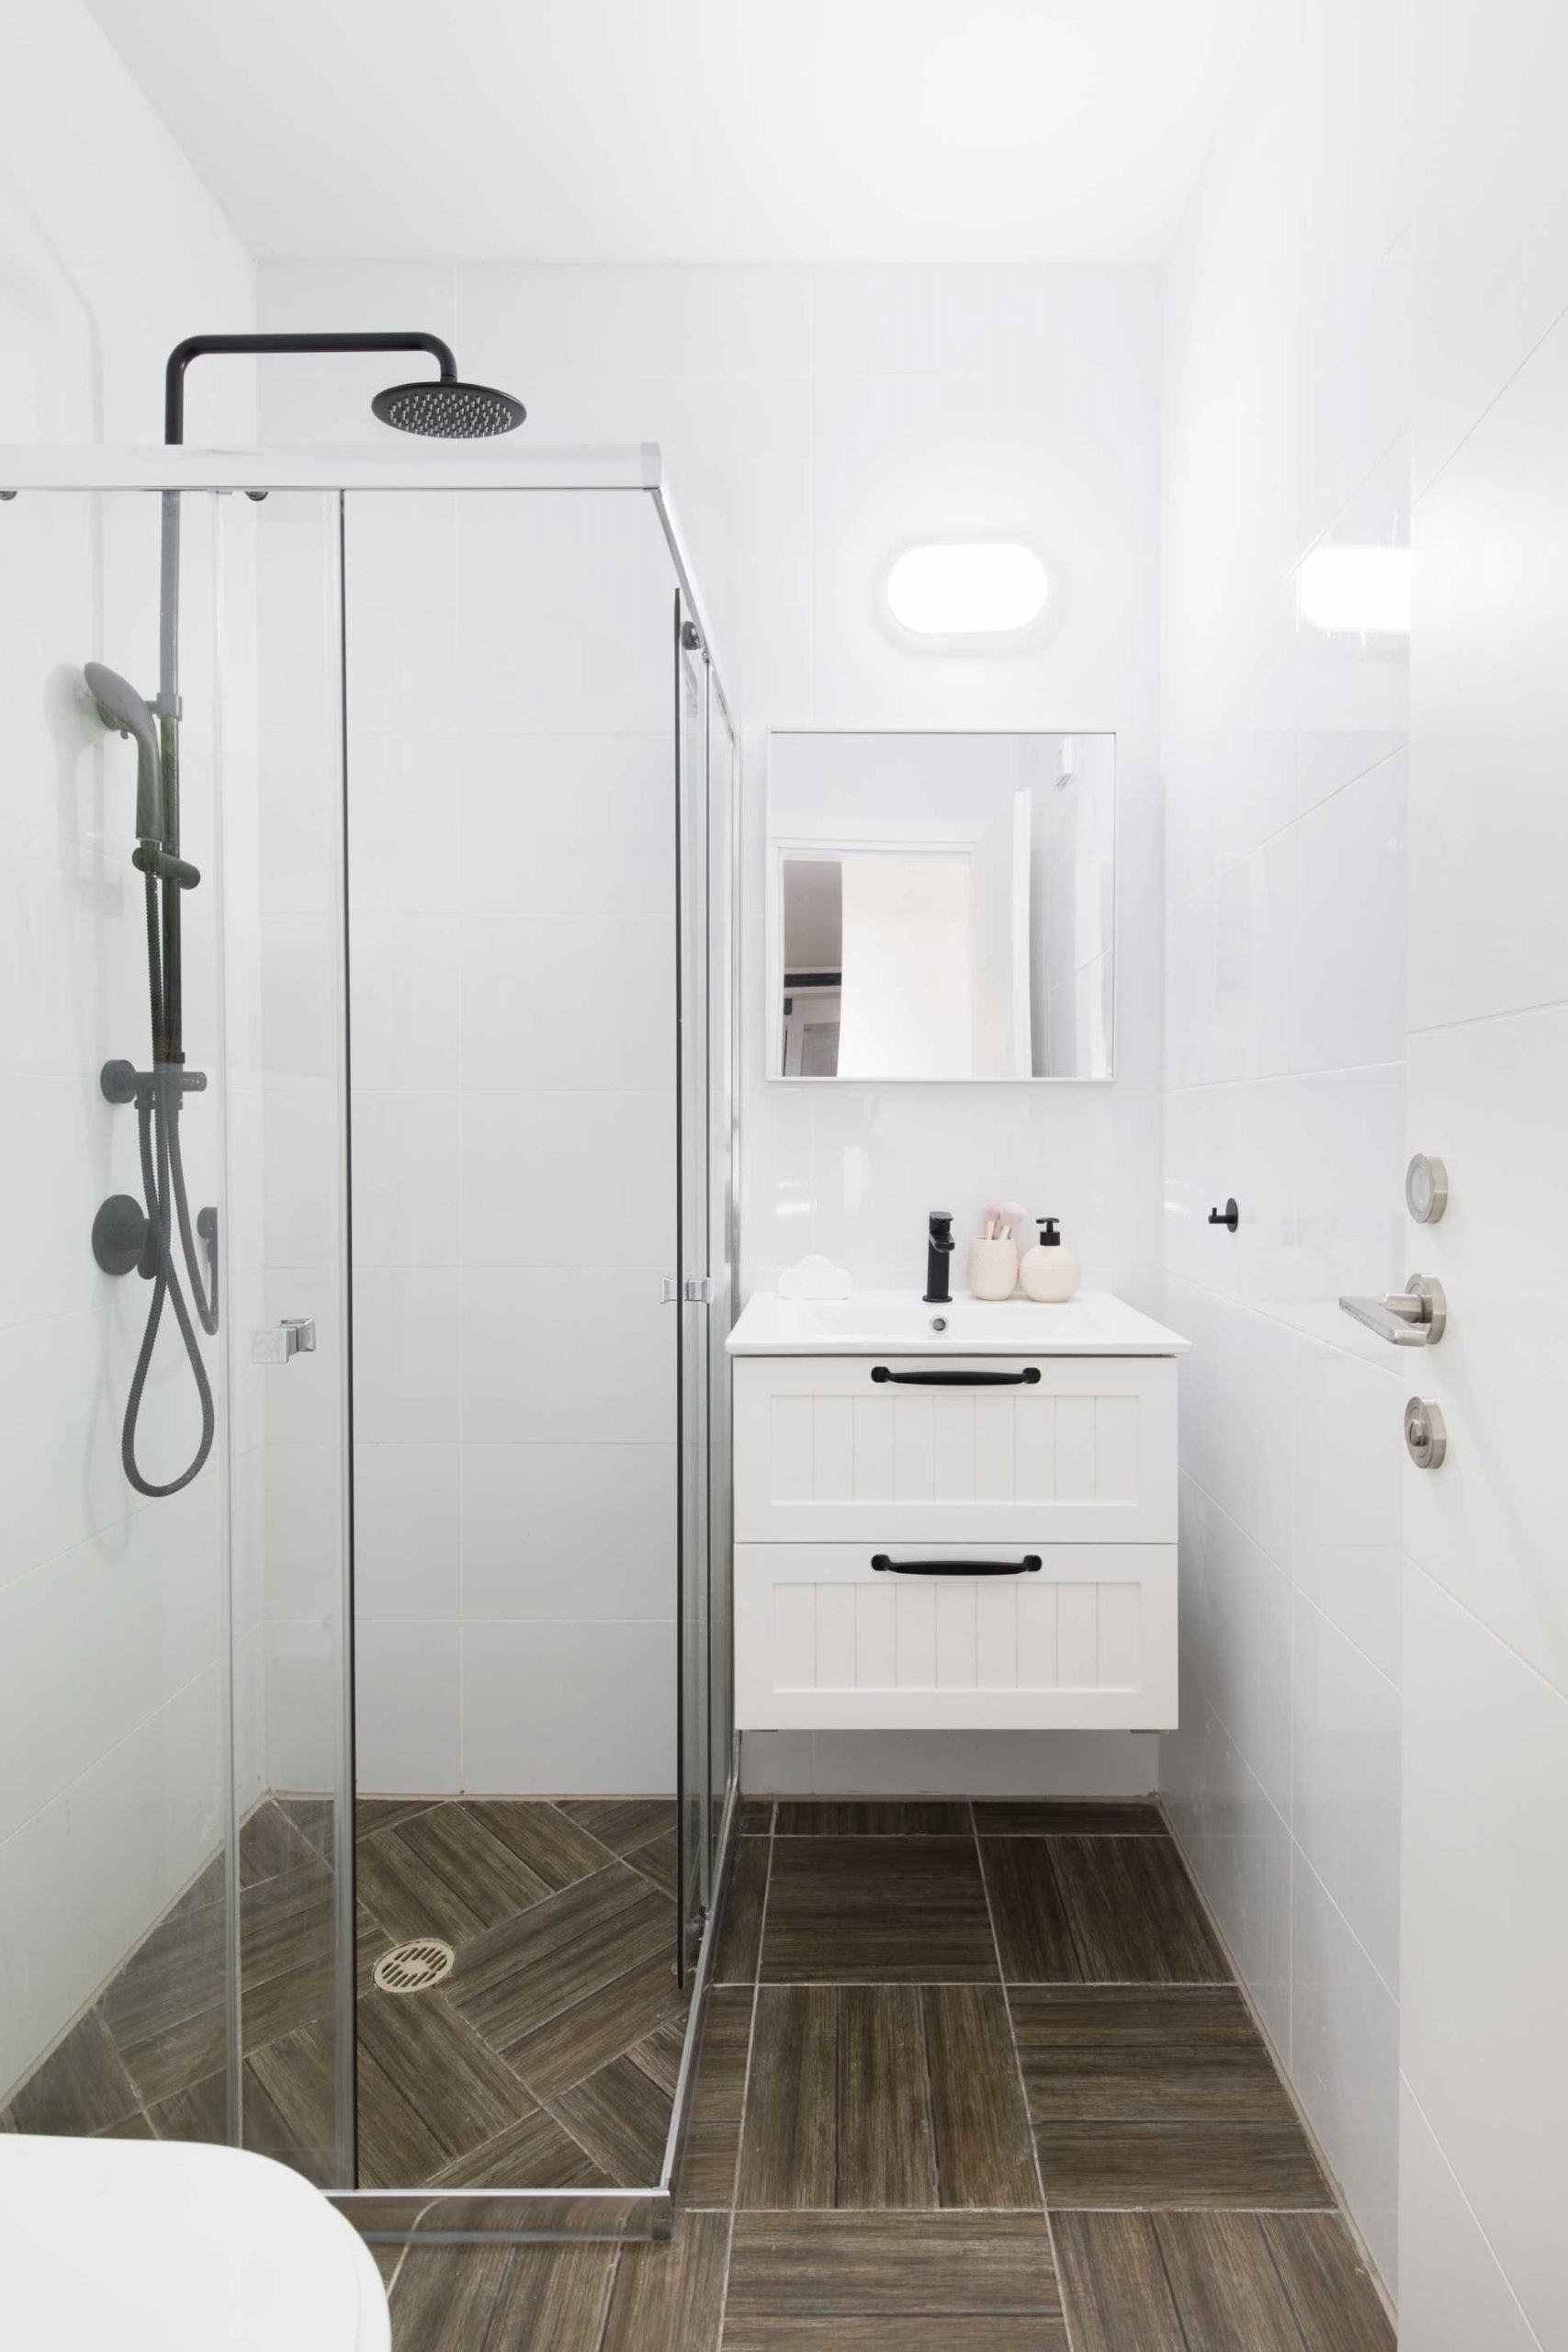 A modern white bathroom.